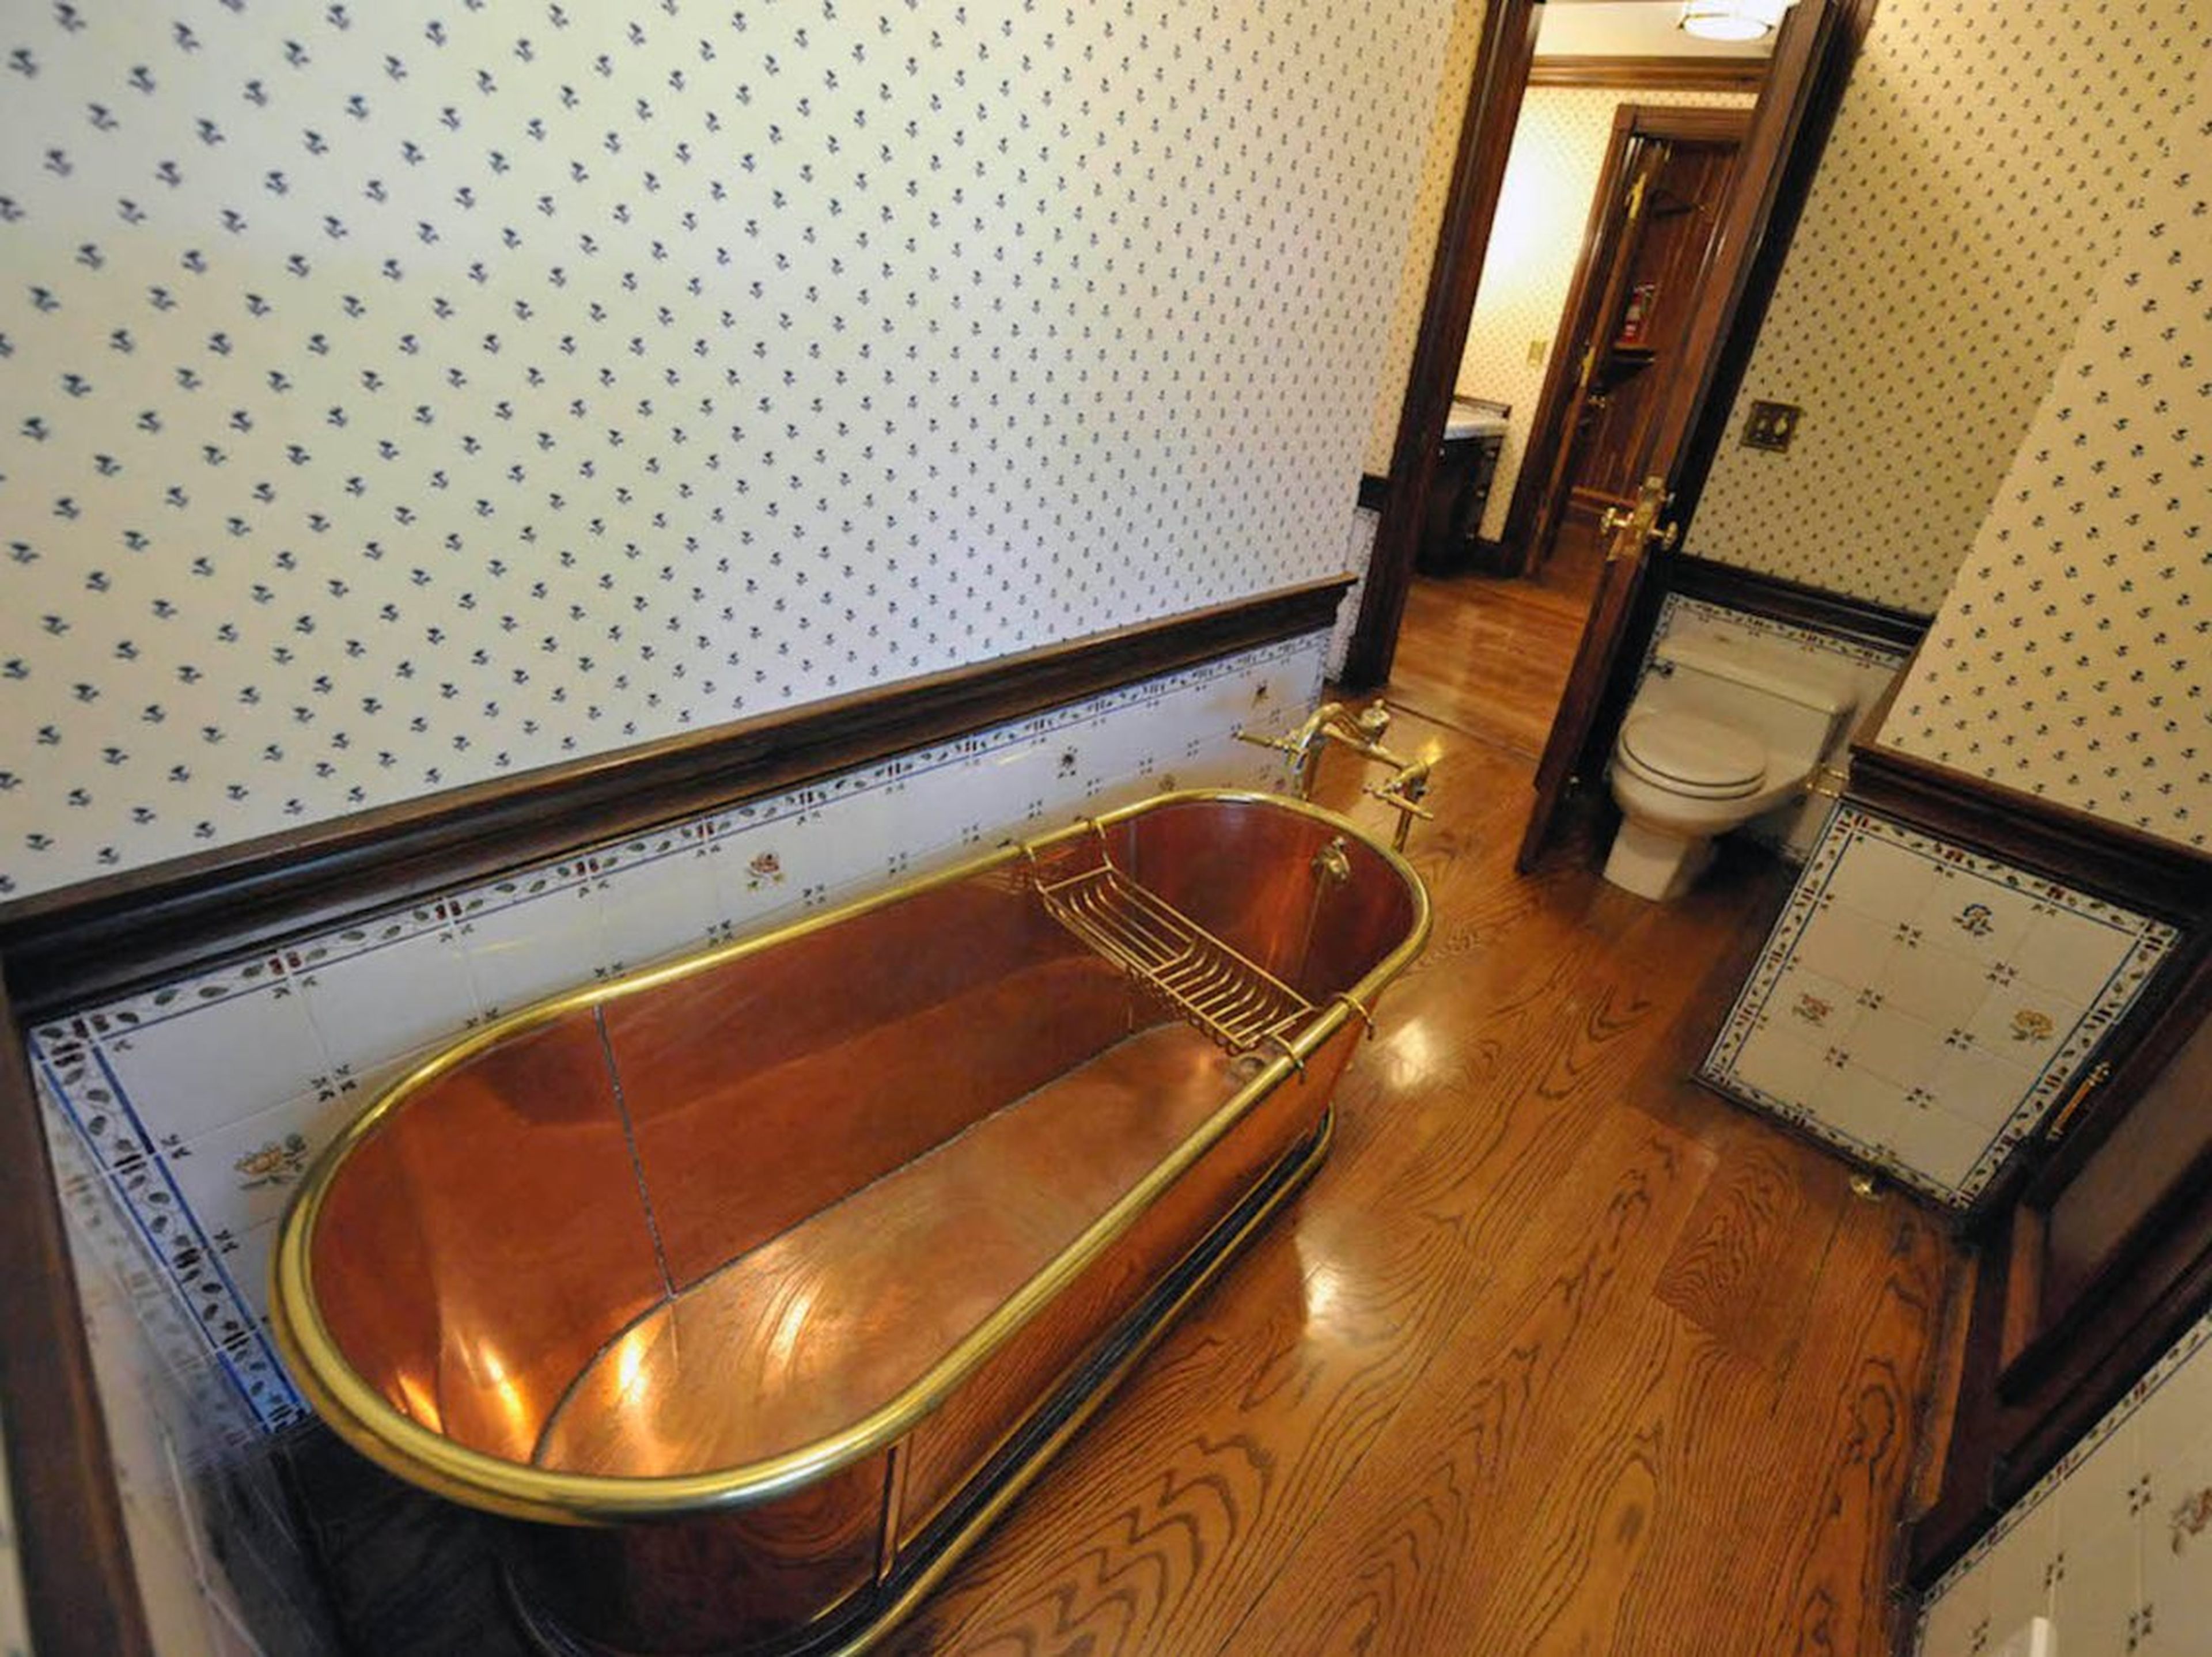 Aquí hay uno de los baños conectados al pasillo. Hay un total de ocho en la residencia principal. Este cuenta con una bañera de cobre